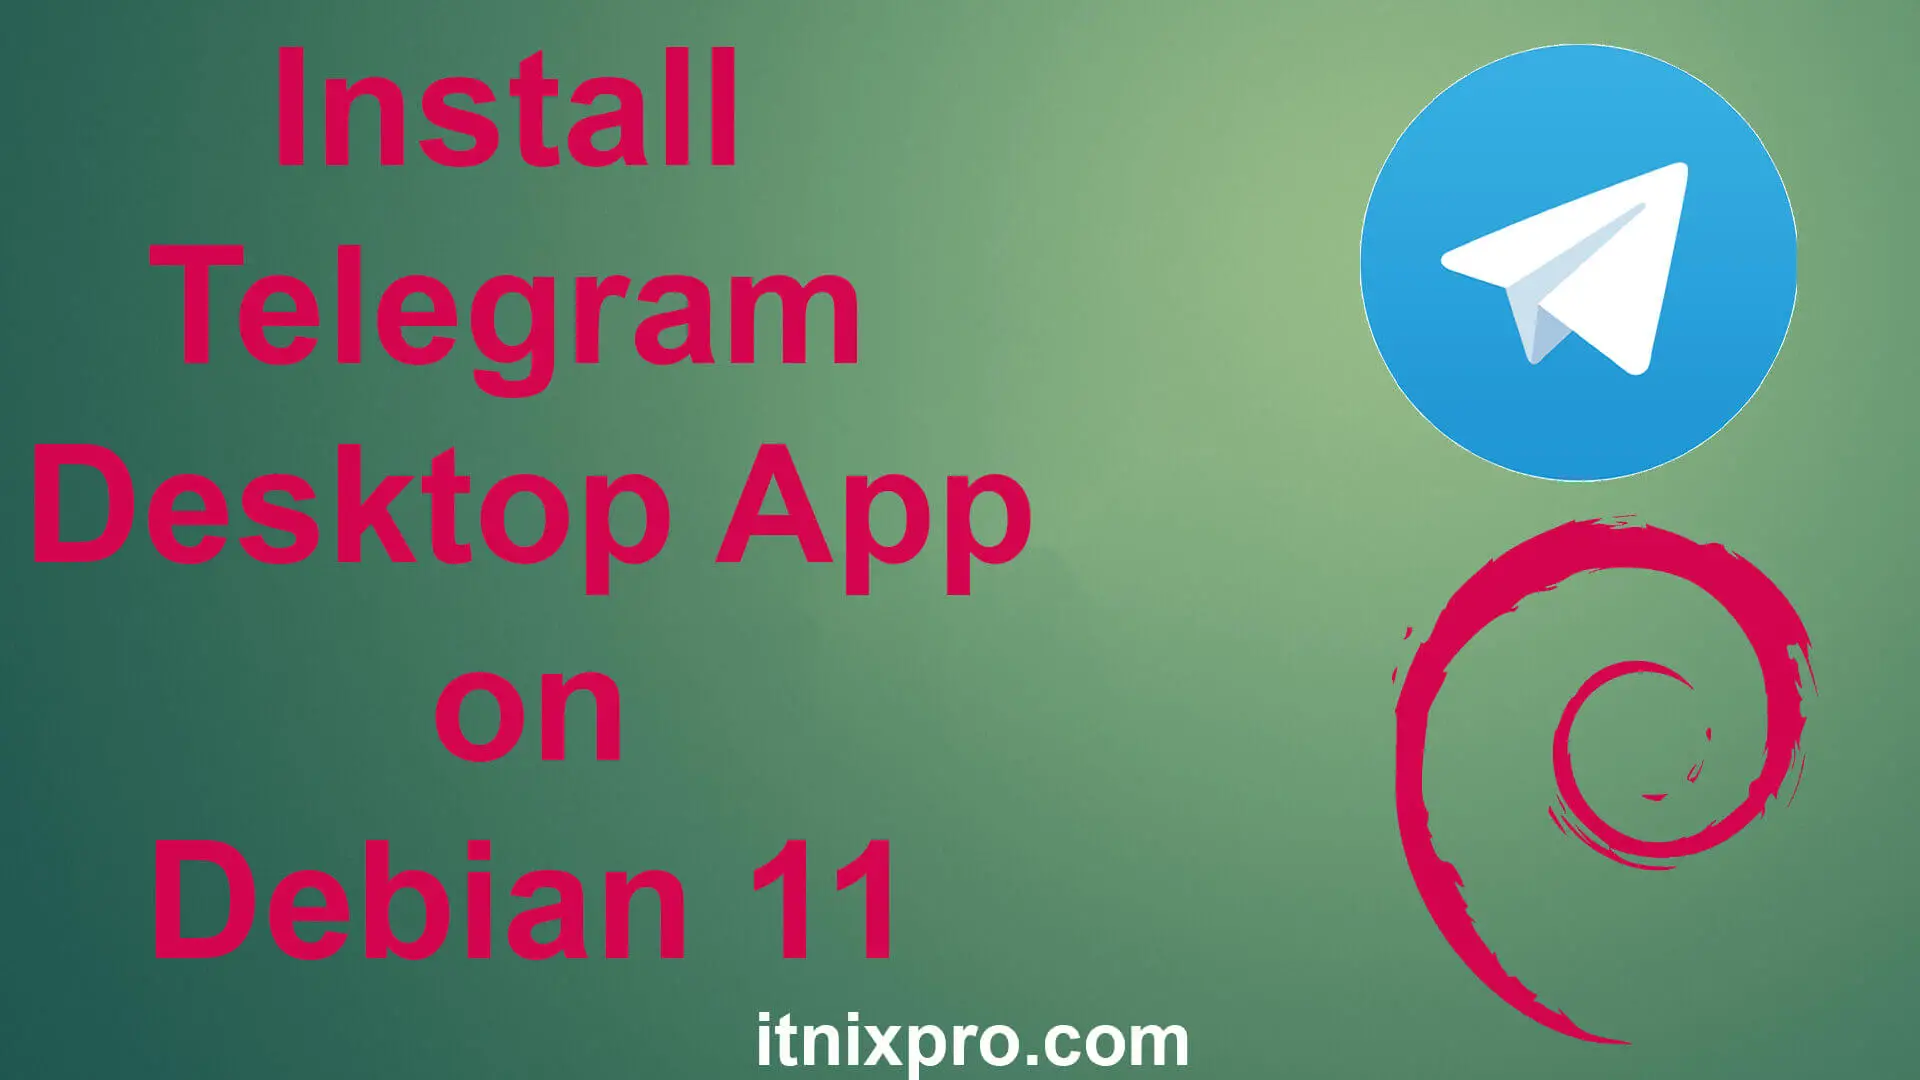 Install Telegram Desktop App on Debian 11